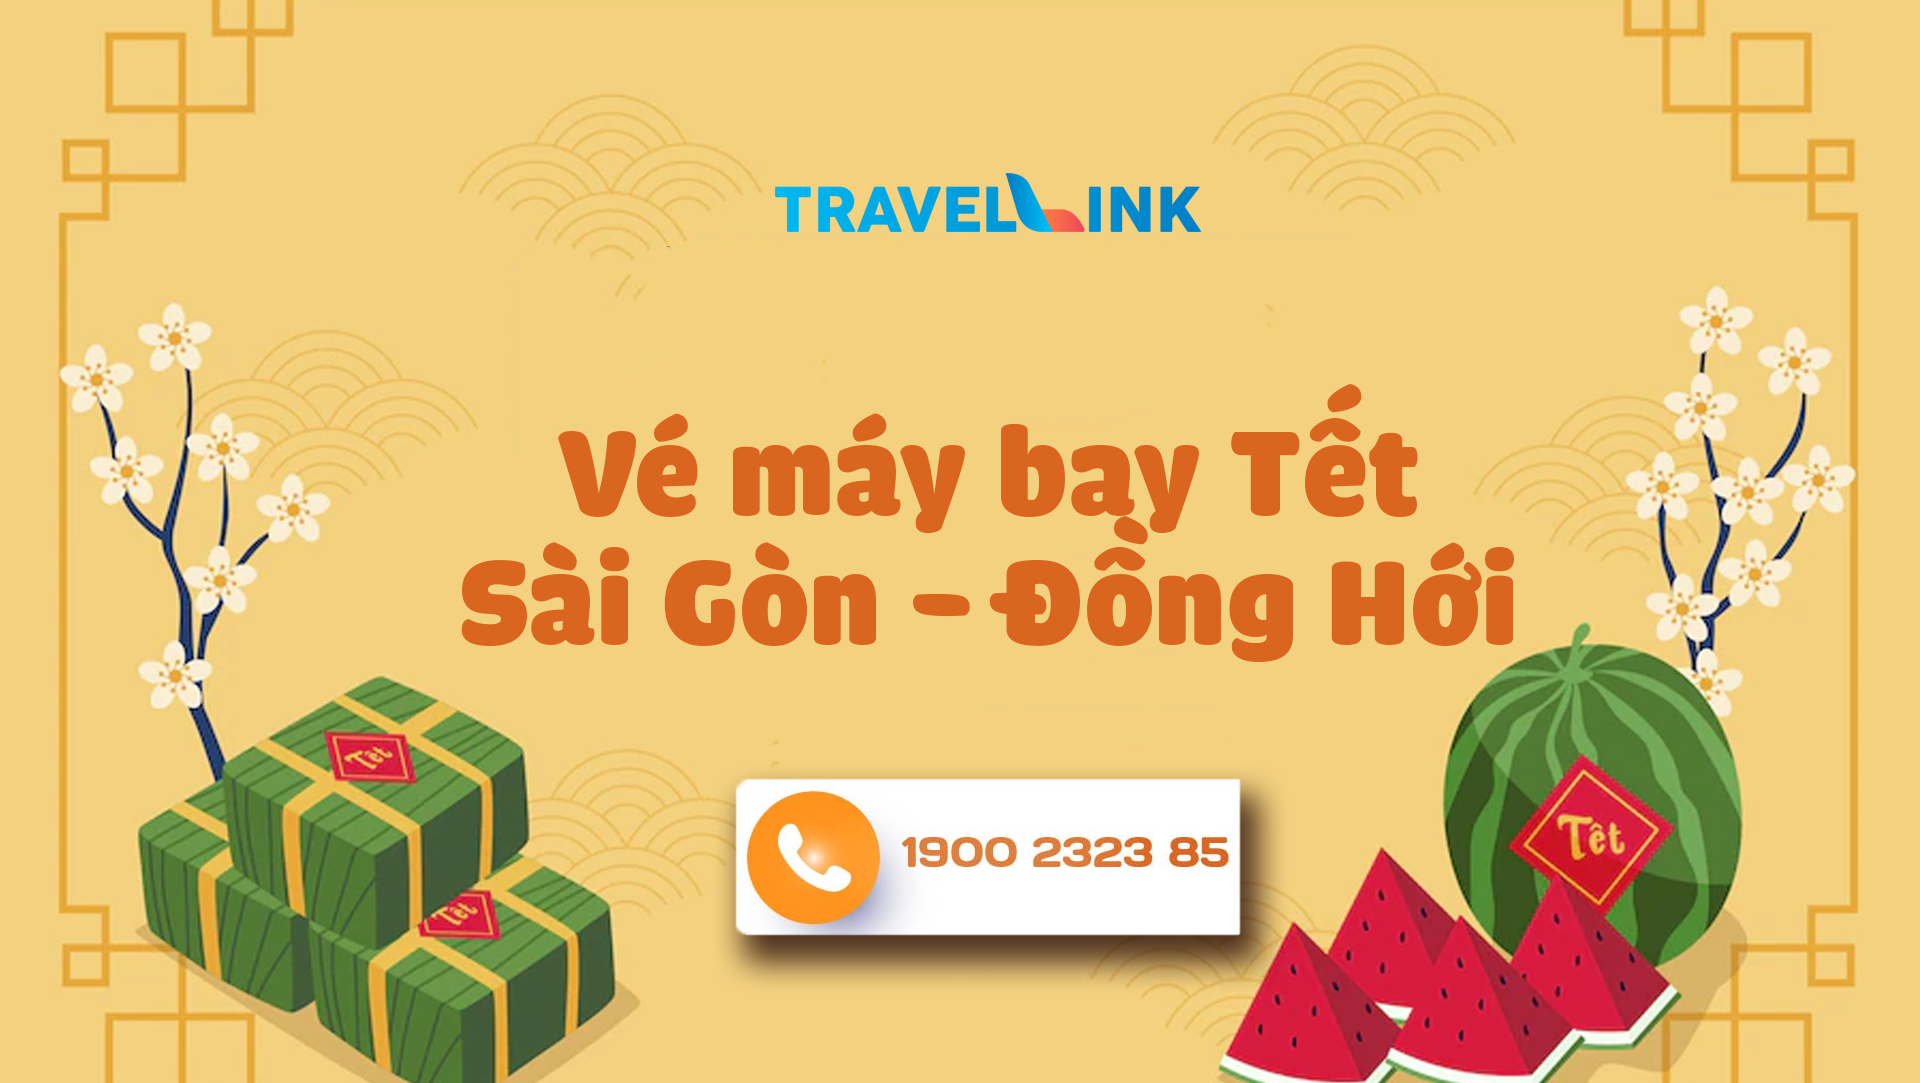 Vé máy bay Tết Sài Gòn - Đồng Hới